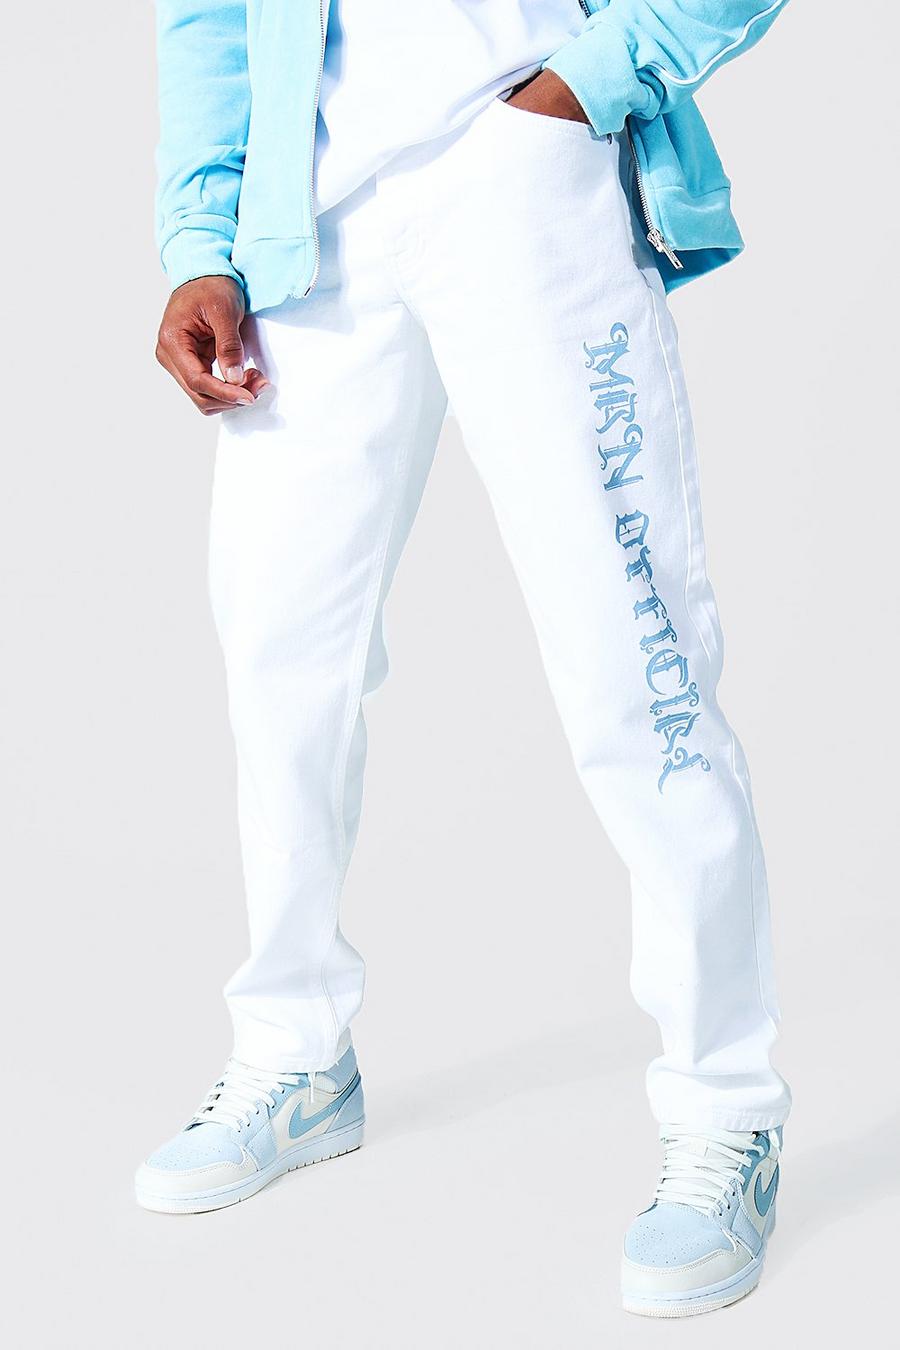 Jeans taglio rilassato con stampa Man Official su una gamba, White image number 1